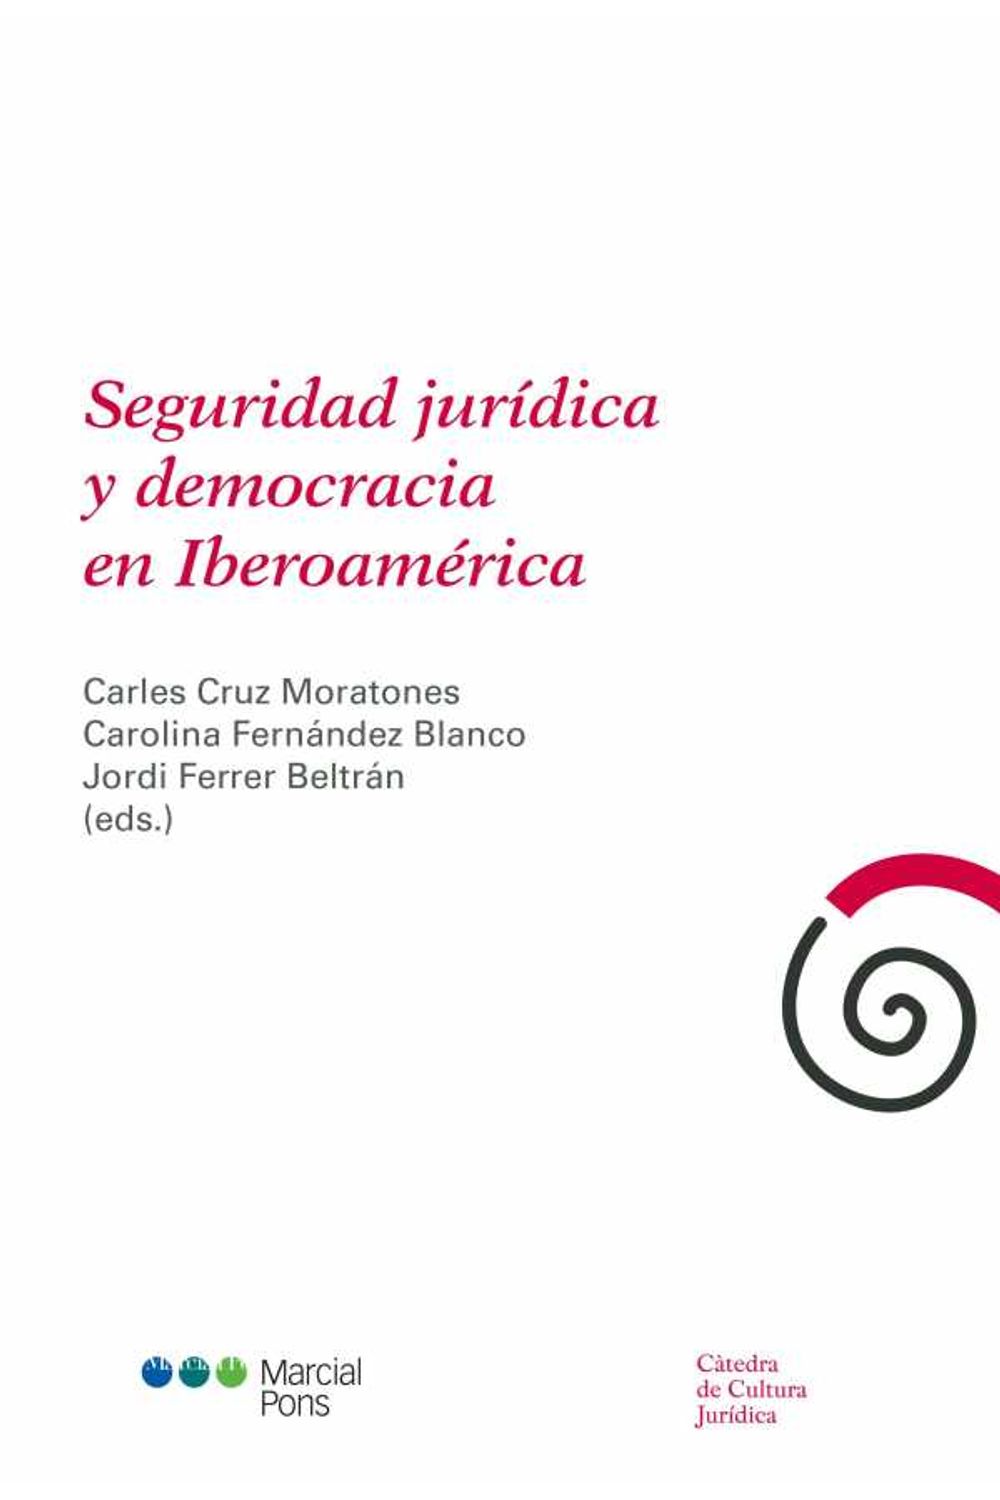 bw-seguridad-juriacutedica-y-democracia-en-iberoameacuterica-marcial-pons-sdh-9788491235392